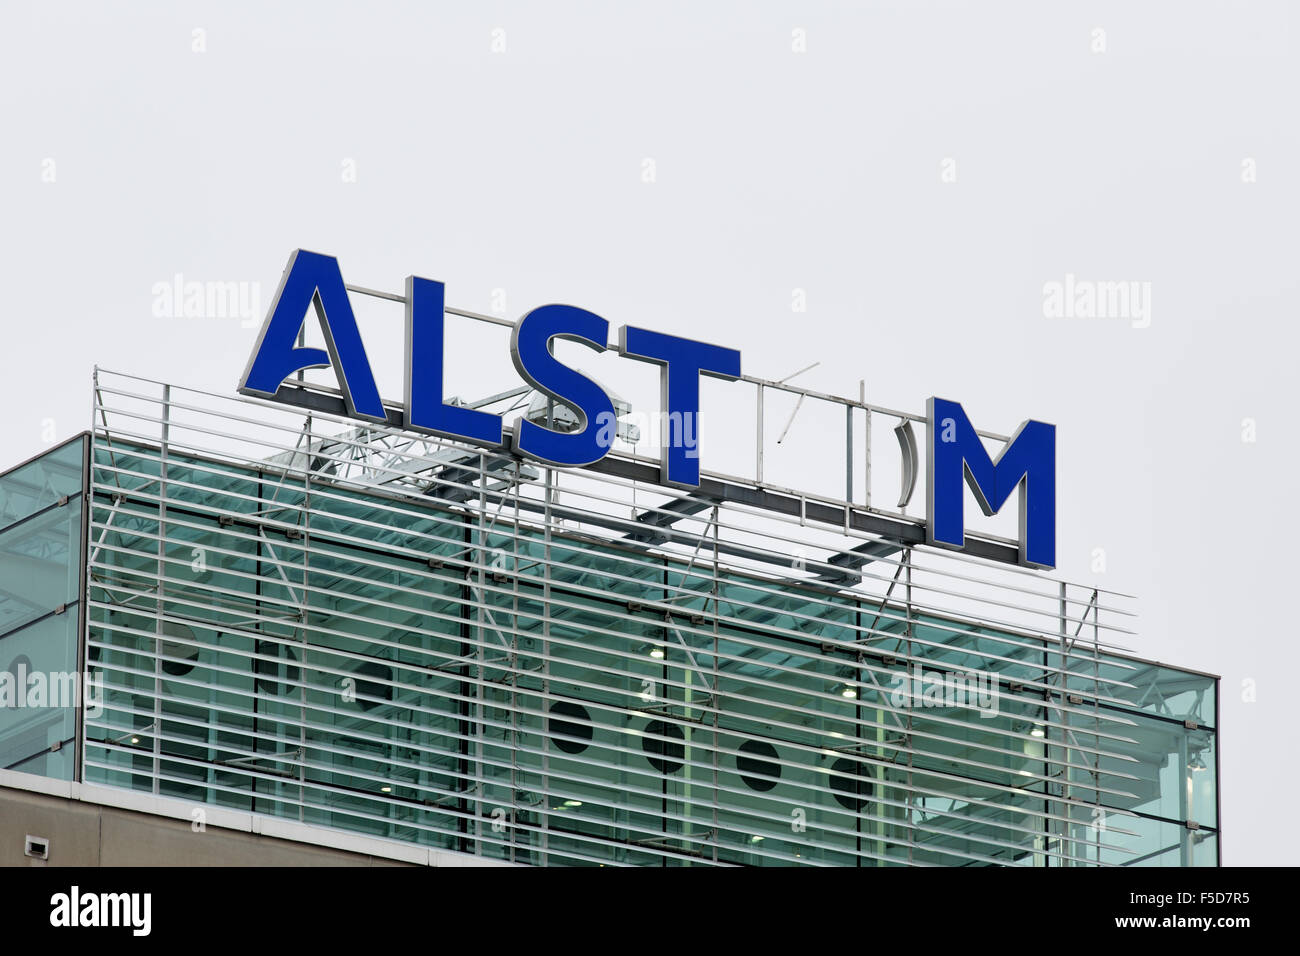 Baden/Schweiz. 2. November 2015. Alstom-Logo auf dem Dach des Wärmeleistung Hauptquartier für Fusionen und Übernahmen von General Electric entfernt wird. Carsten Reisinger/Alamy Live-Nachrichten. Stockfoto